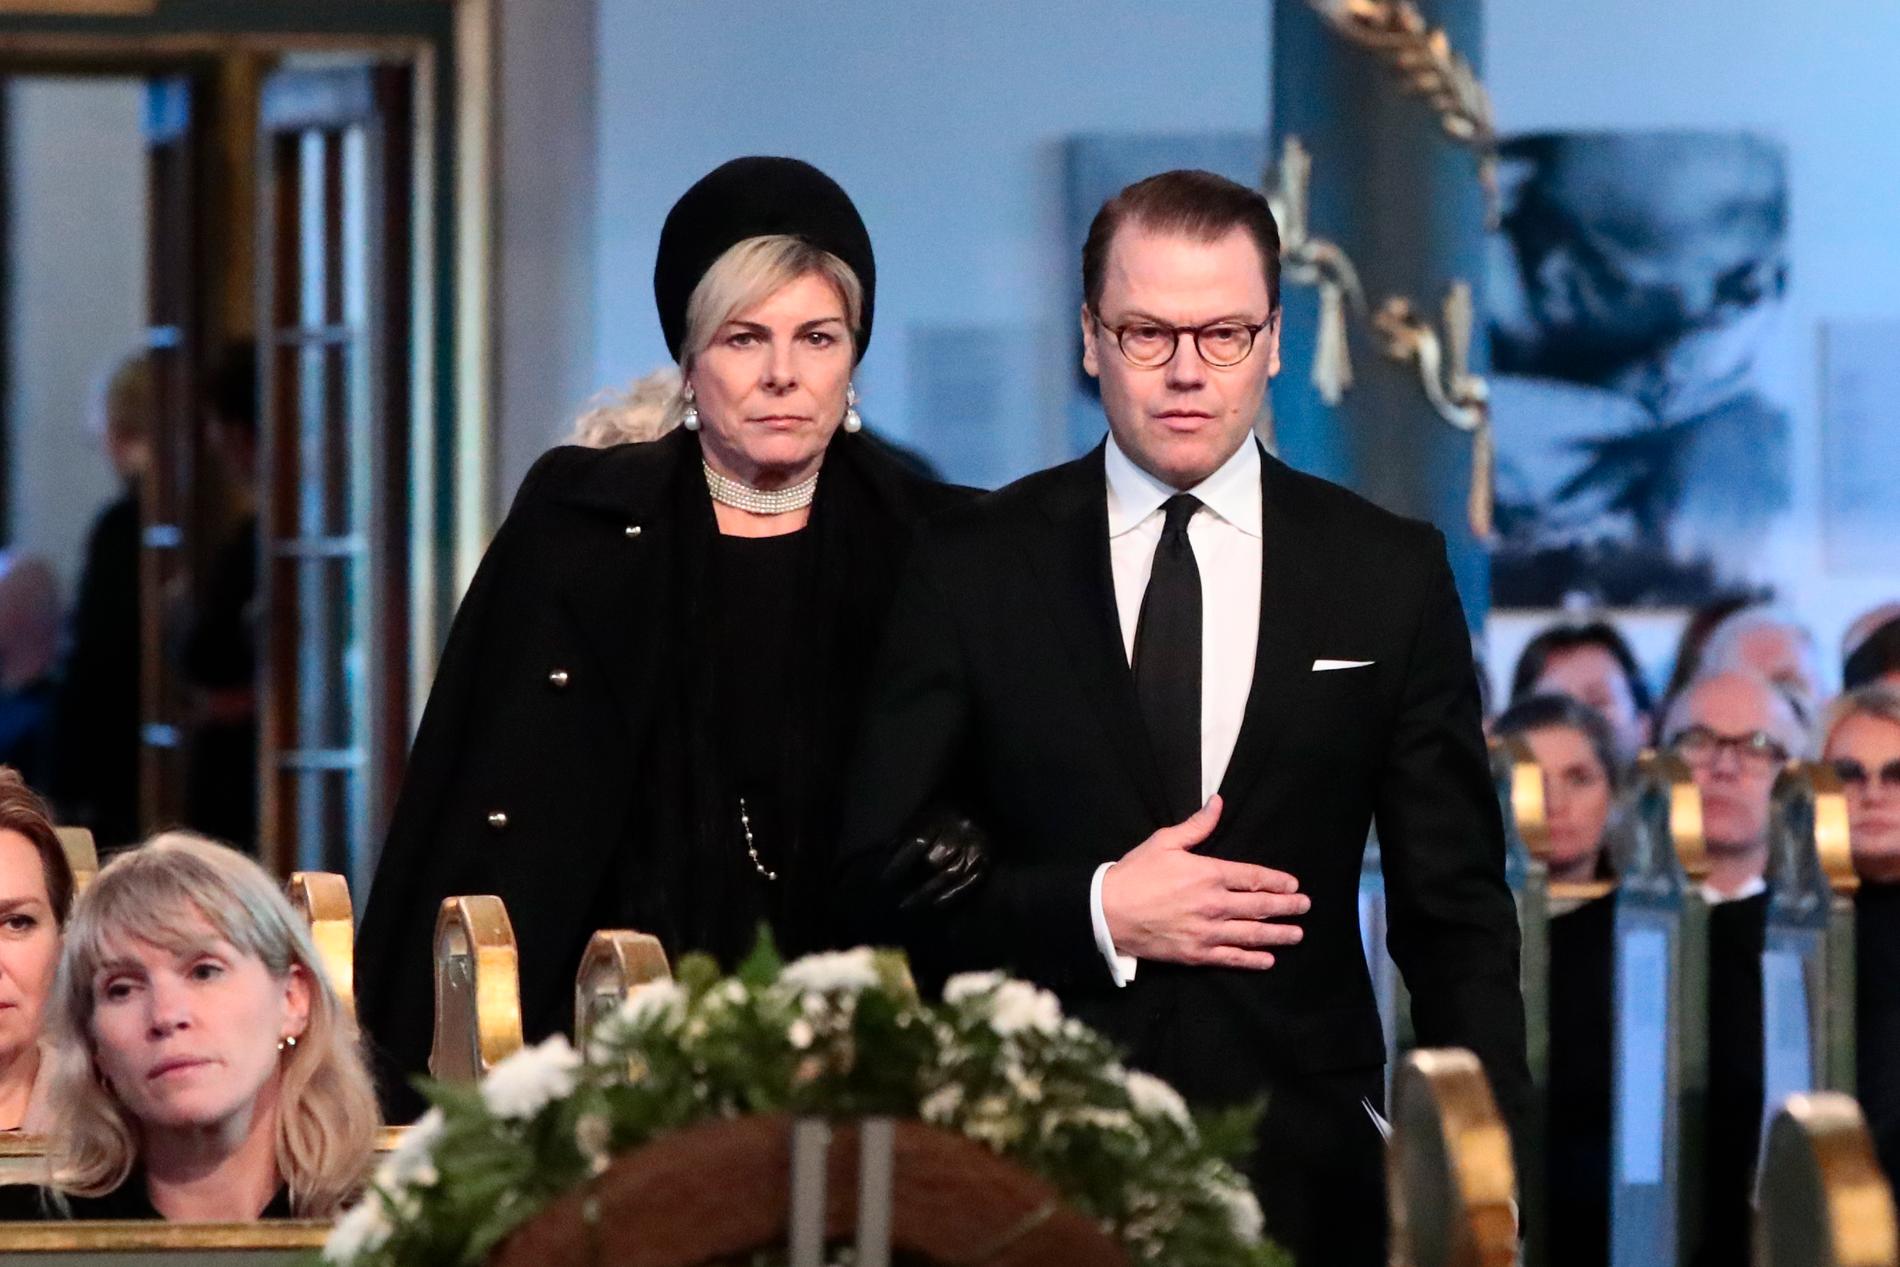 Begravningen av Ari Behn i Oslos domkyrka på fredagen. Prins Daniel anländer tillsammans med Petra Laurentien Brinkenhorst av Holland.